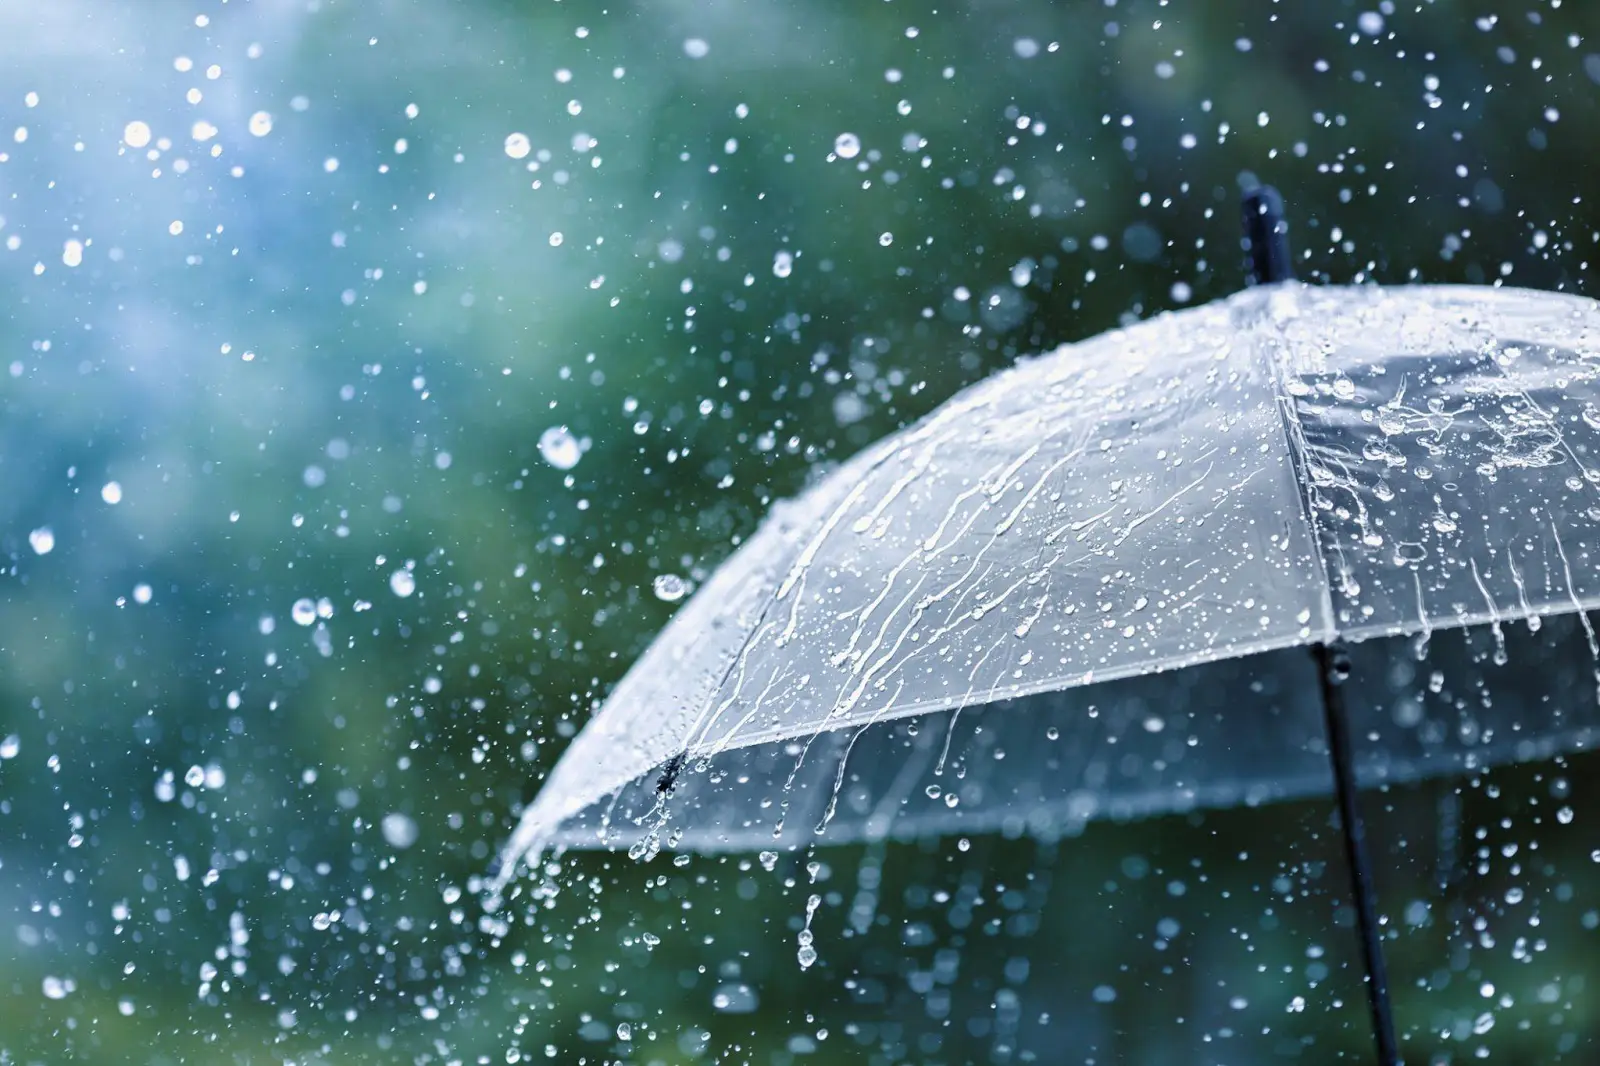 Aký je výklad sna o daždi?